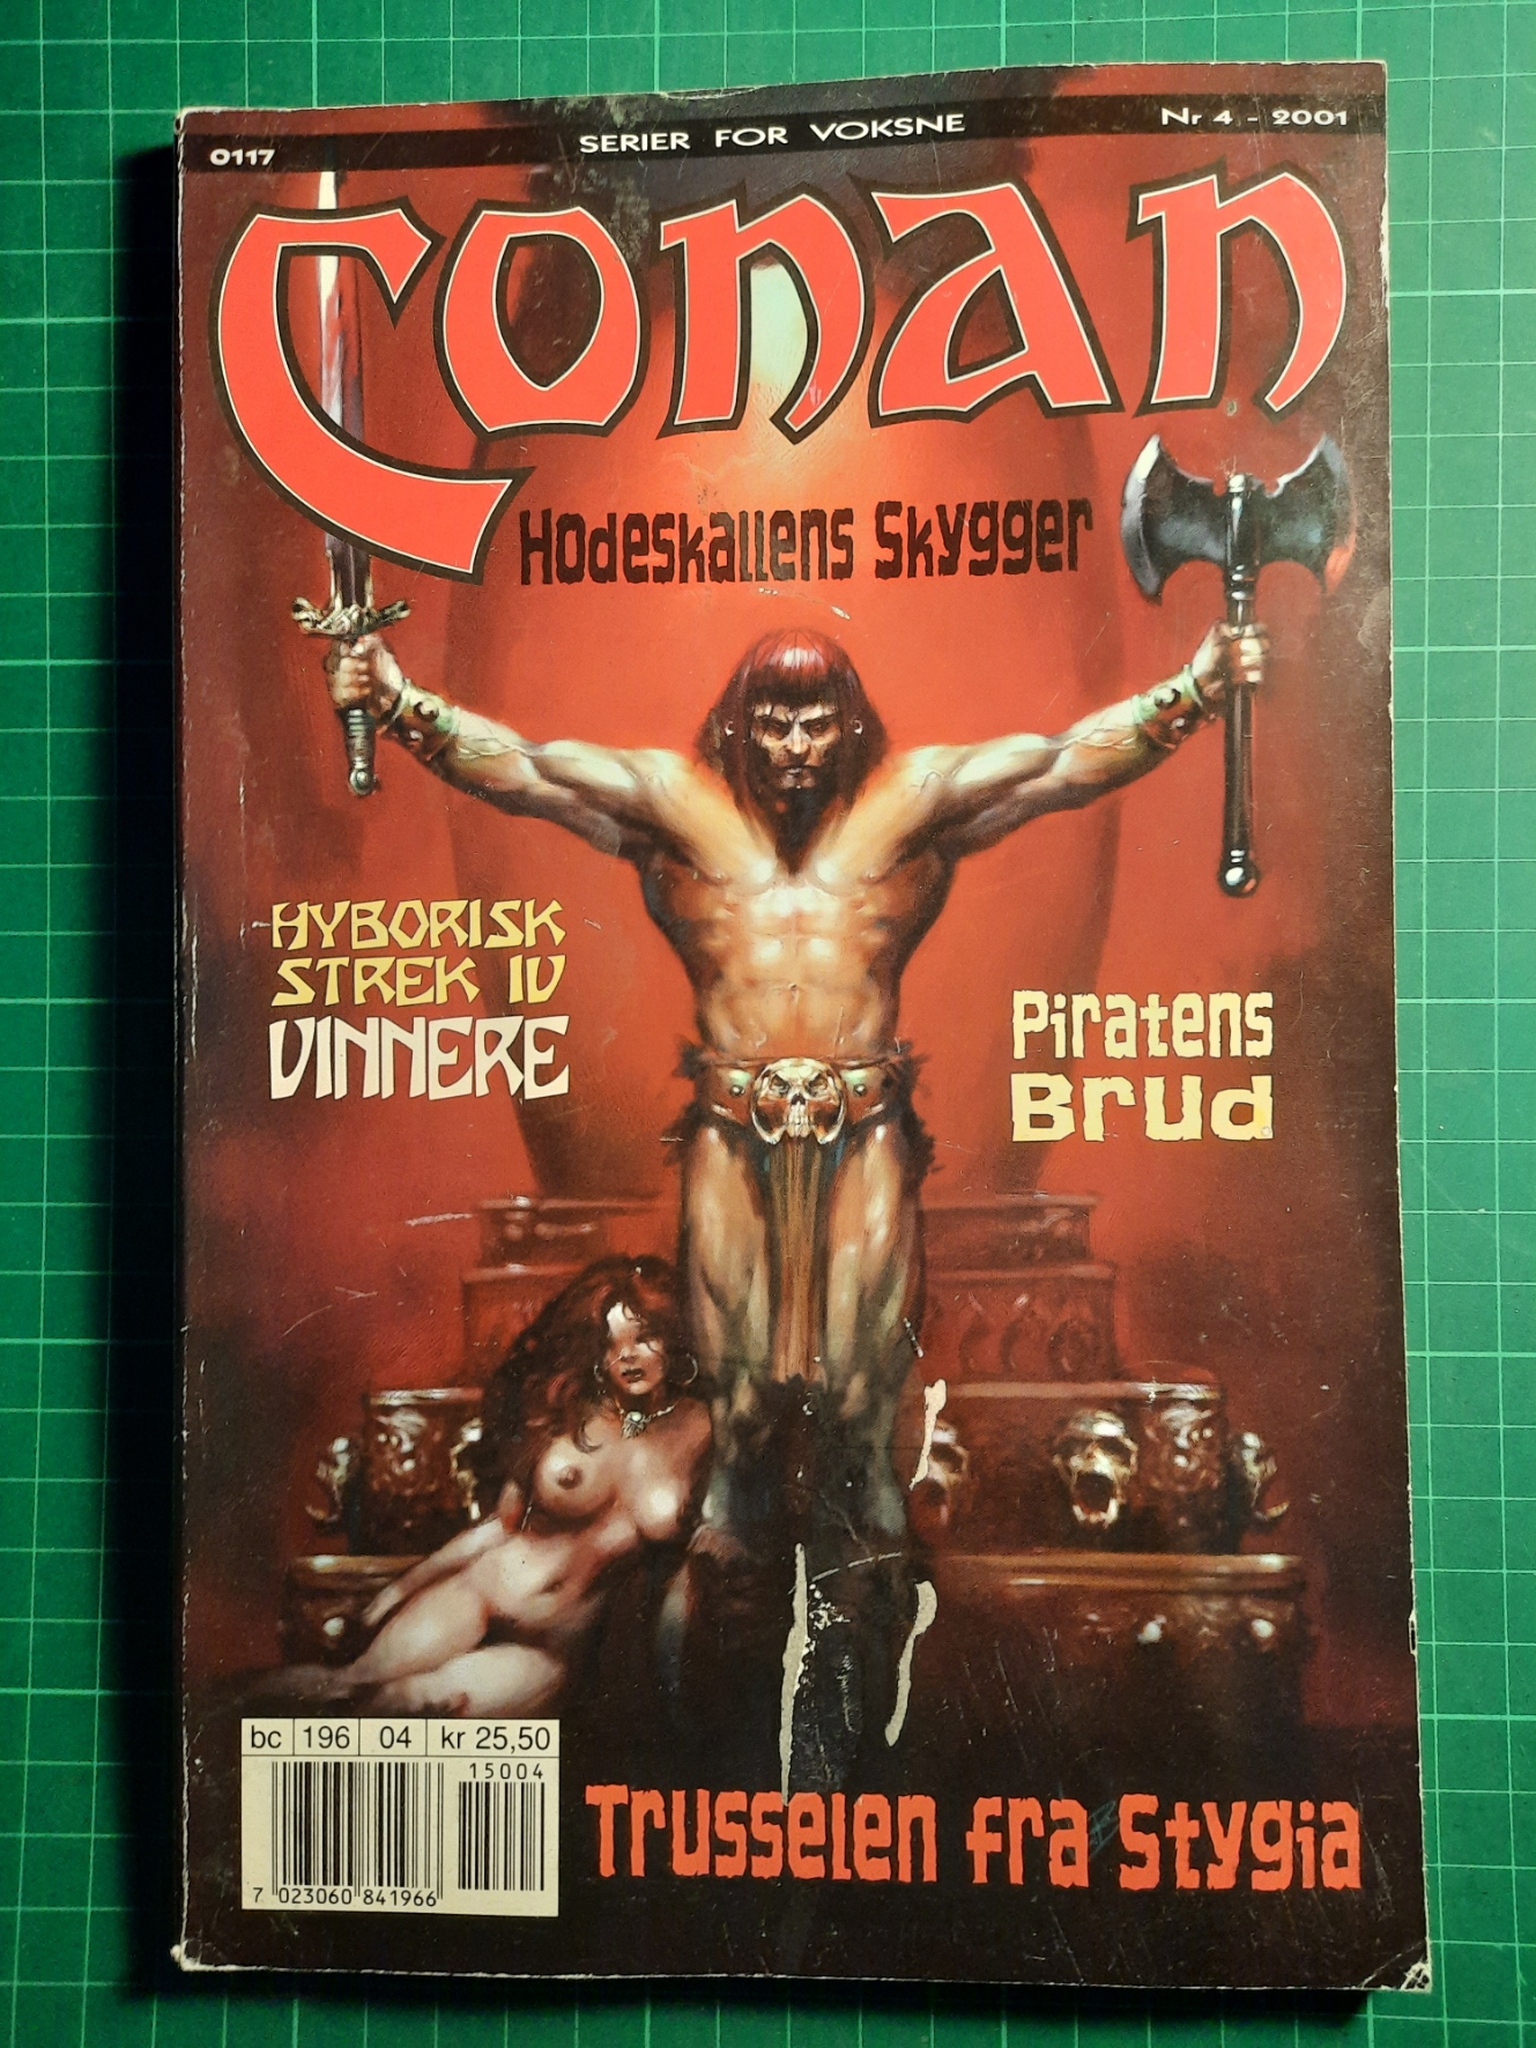 Conan 2001 - 04